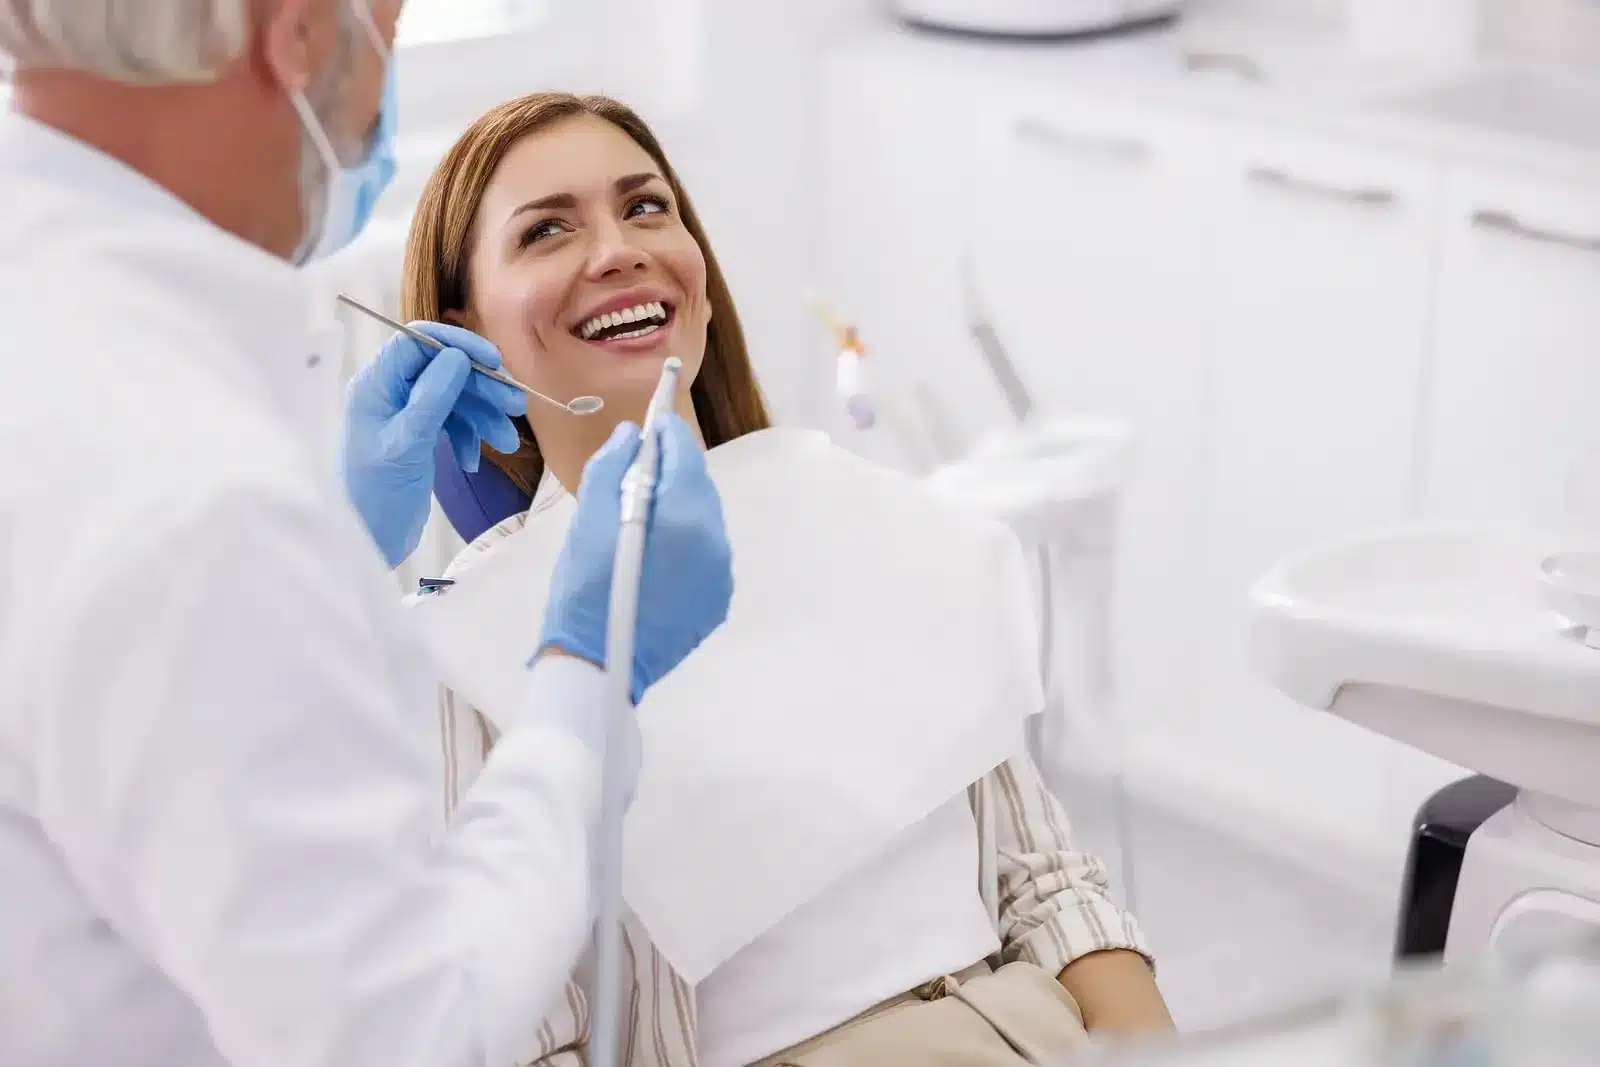 Khám răng thường xuyên để nhận biết các vấn đề răng miệng